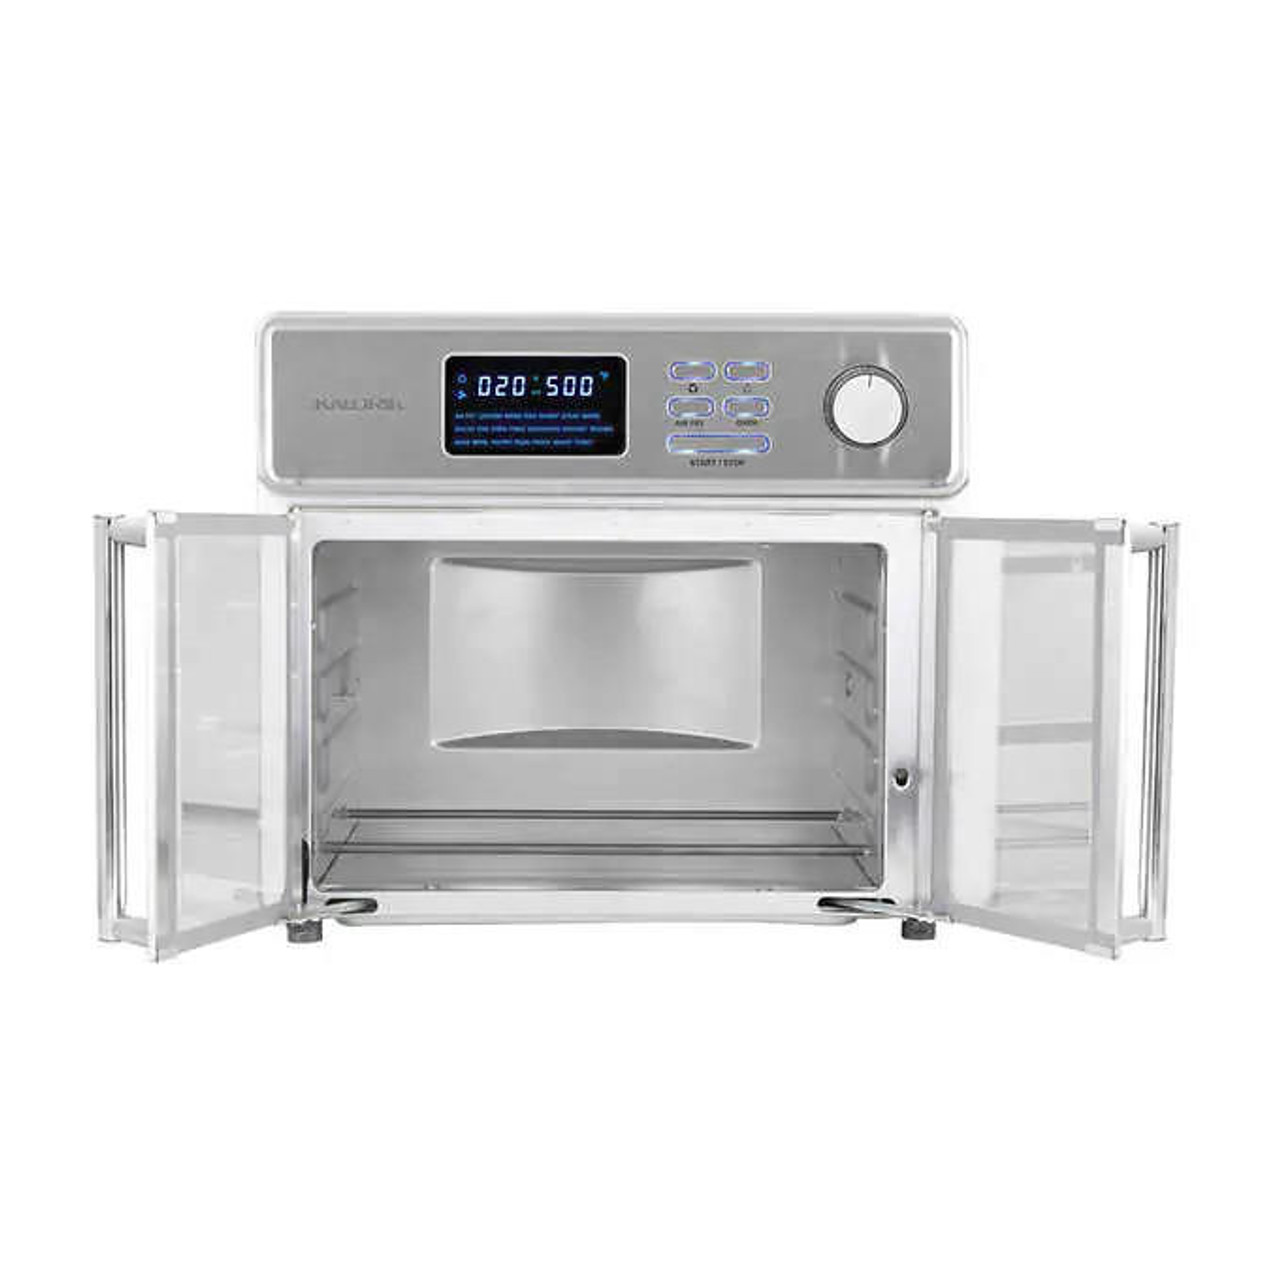 Sur La Table 13qt Multifunctional Air Fryer | Cook, Crisp & More! (Open Box)